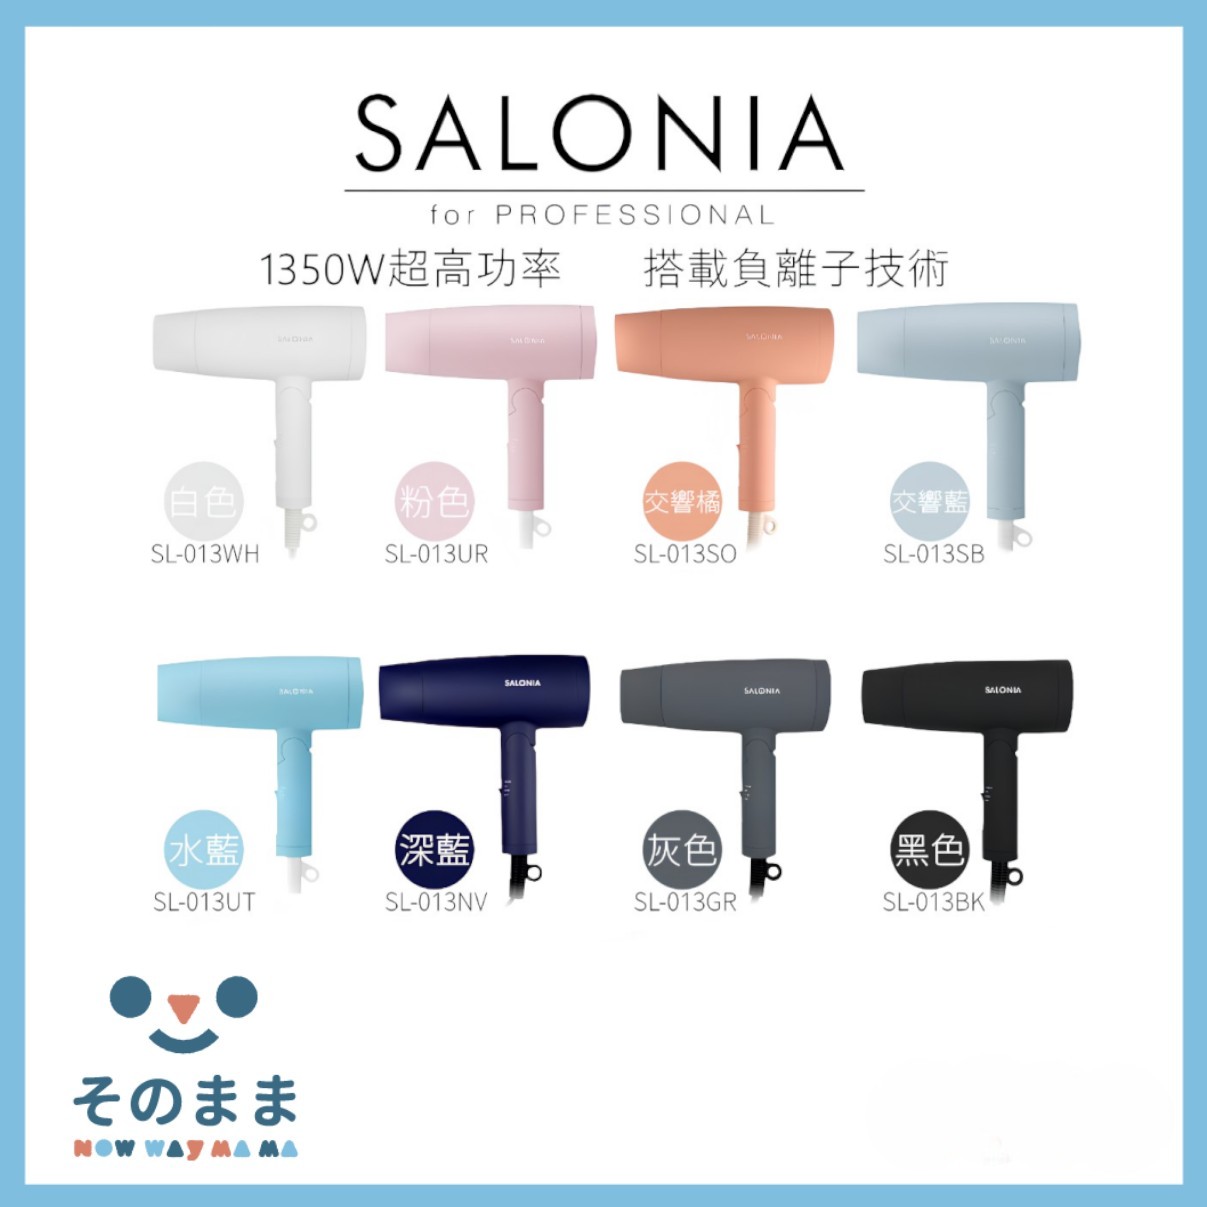 【日本出貨丨火速出貨】SALONIA 吹風機 SL-013 速乾 ⼤風量 可折疊 SL-013